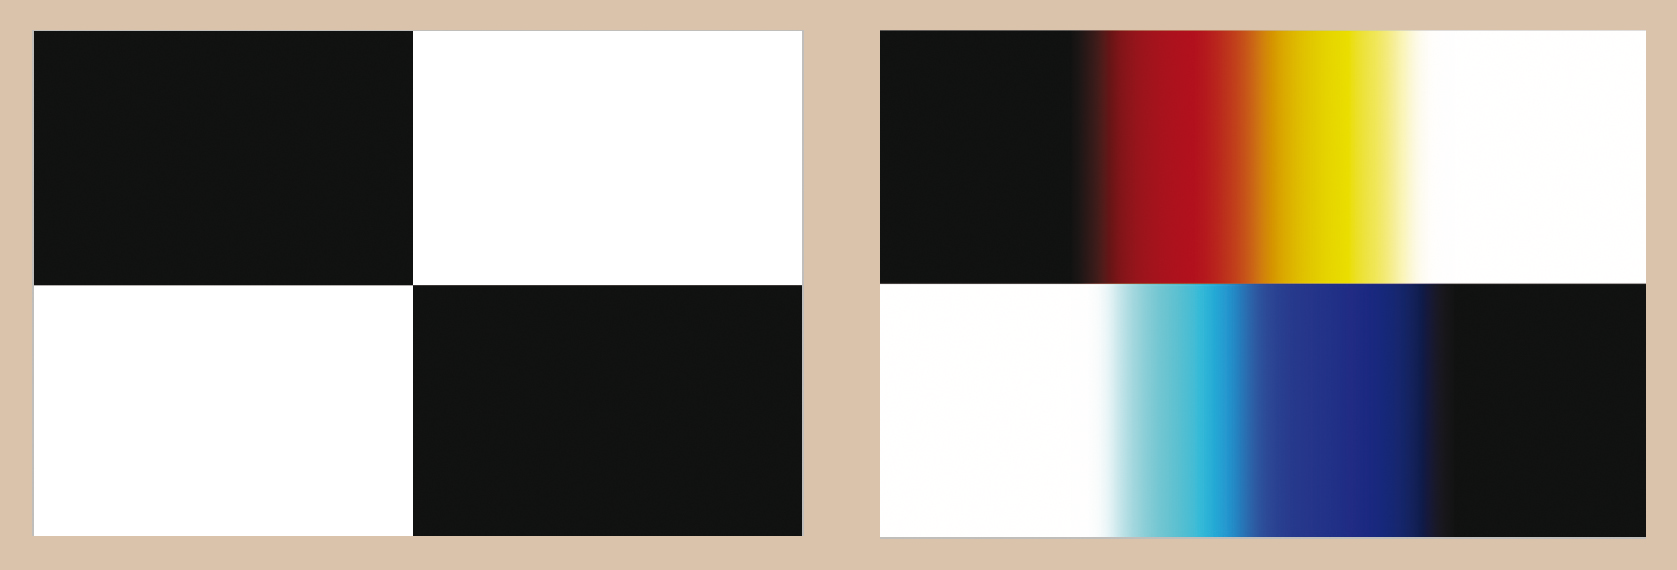 Figur 10.15: Det finnes to typer randfarger, avhengig av hvilken side som er sort og hvilken er hvit i forhold til prismets orientering.